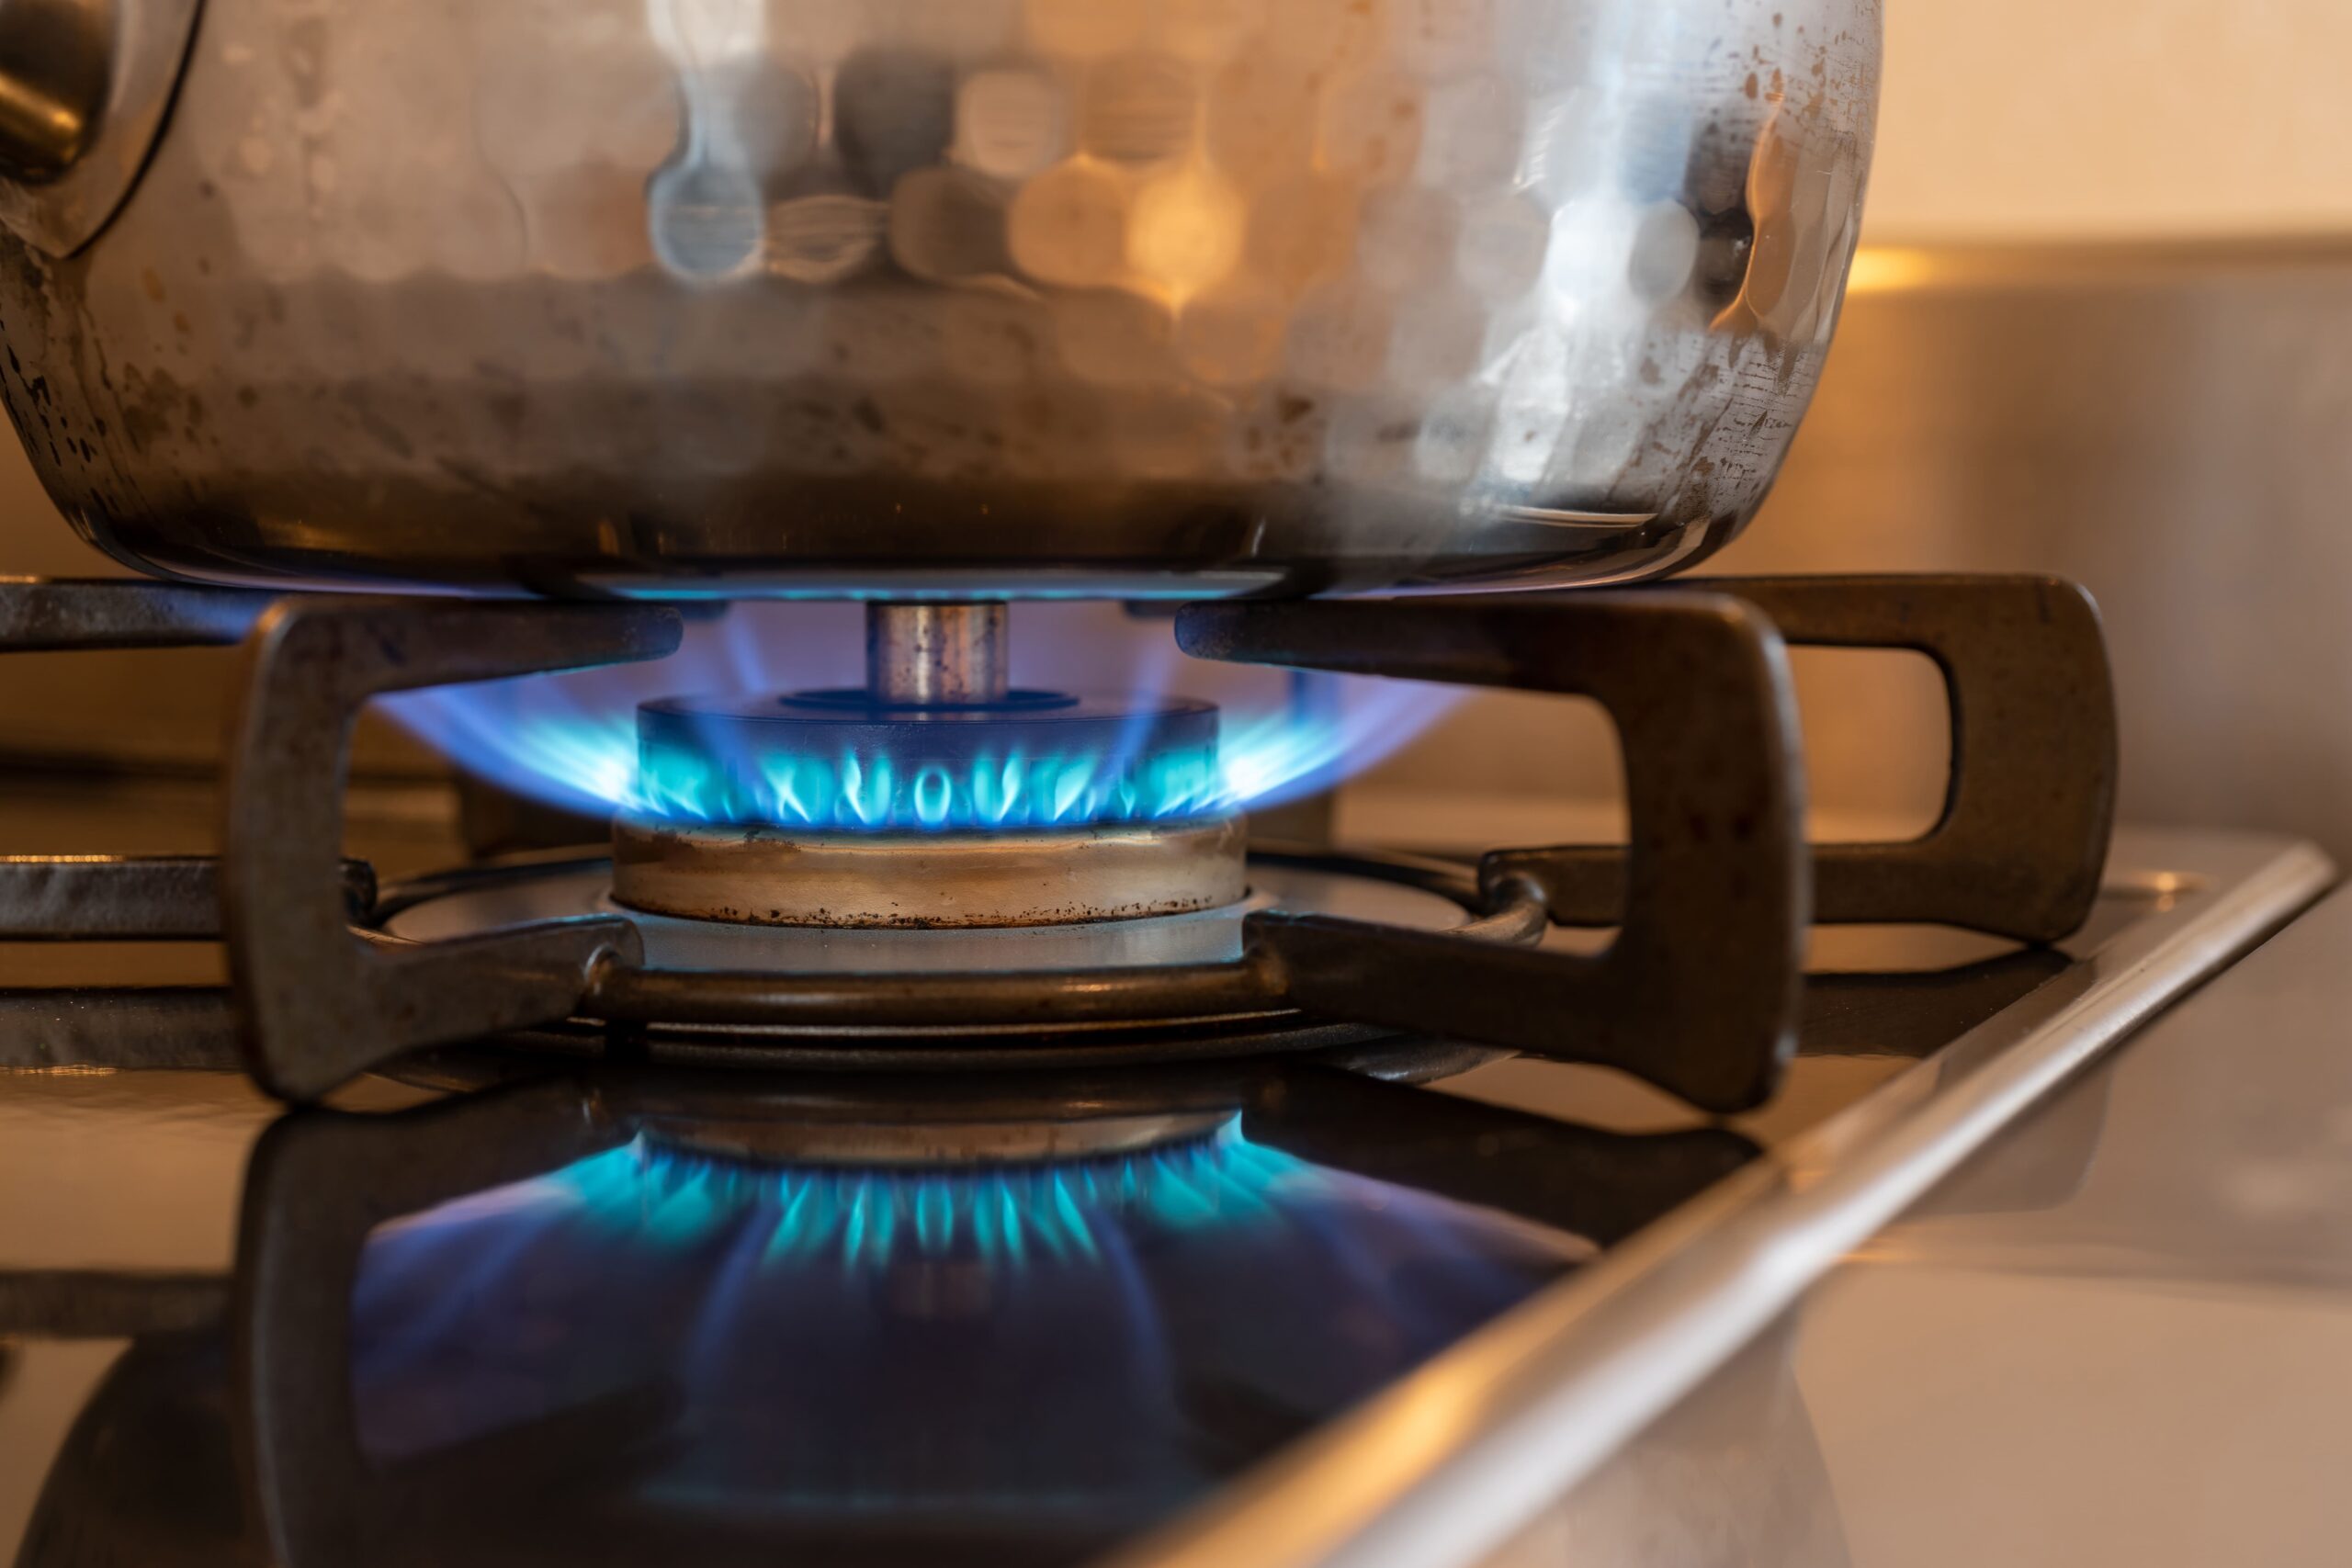 Gas lp para hogares a domicilio gas lp para hogares a domicilio - fuego estufa gas 1 scaled - Gas lp para hogares a domicilio